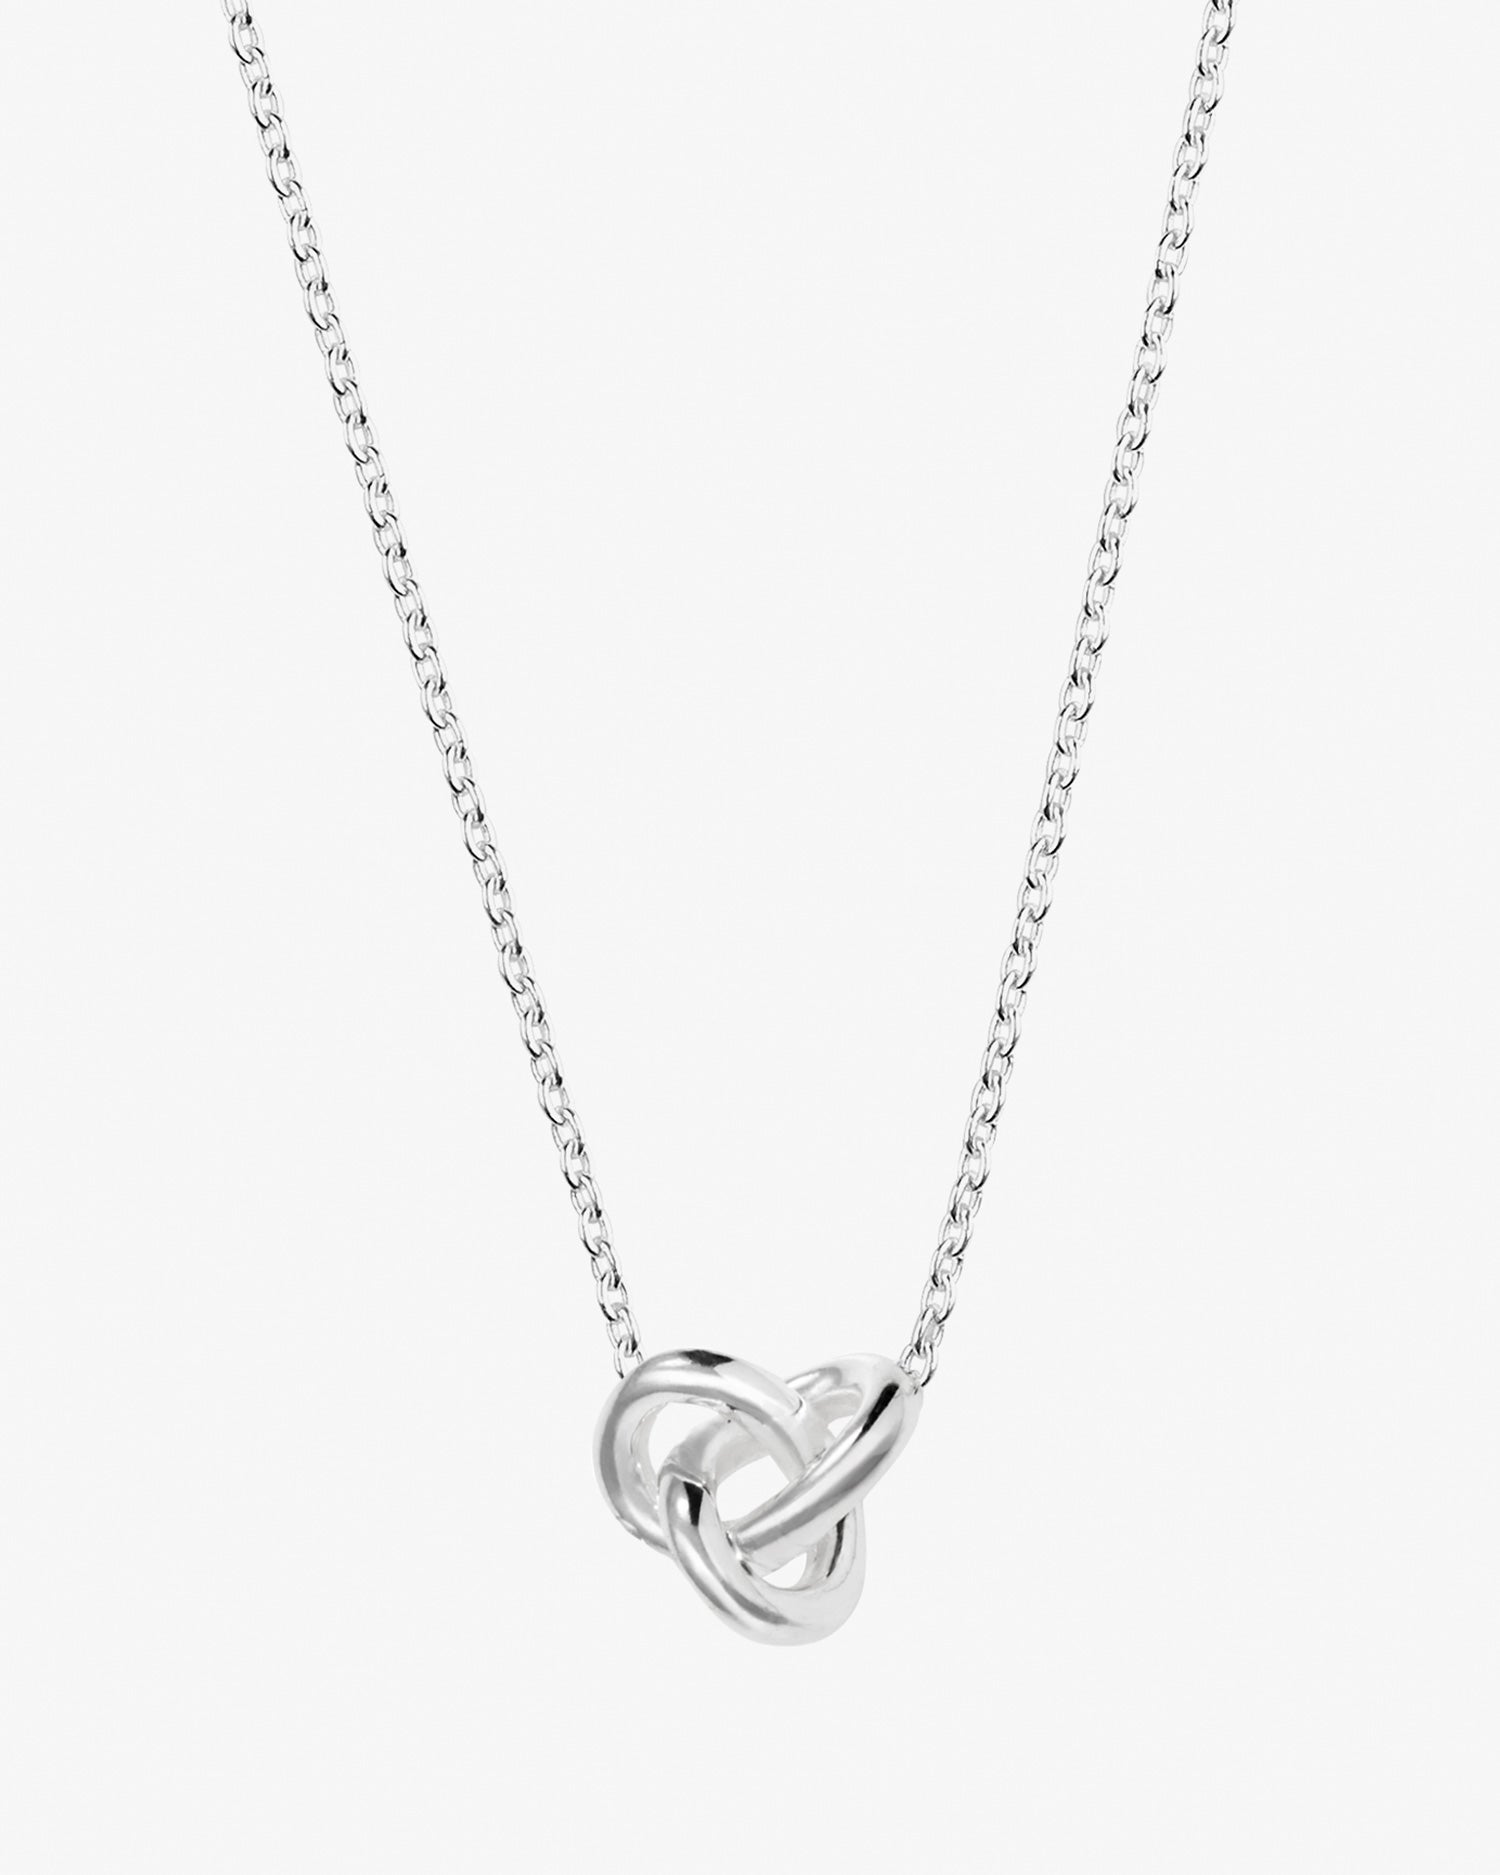 le-knot-necklace-long-01